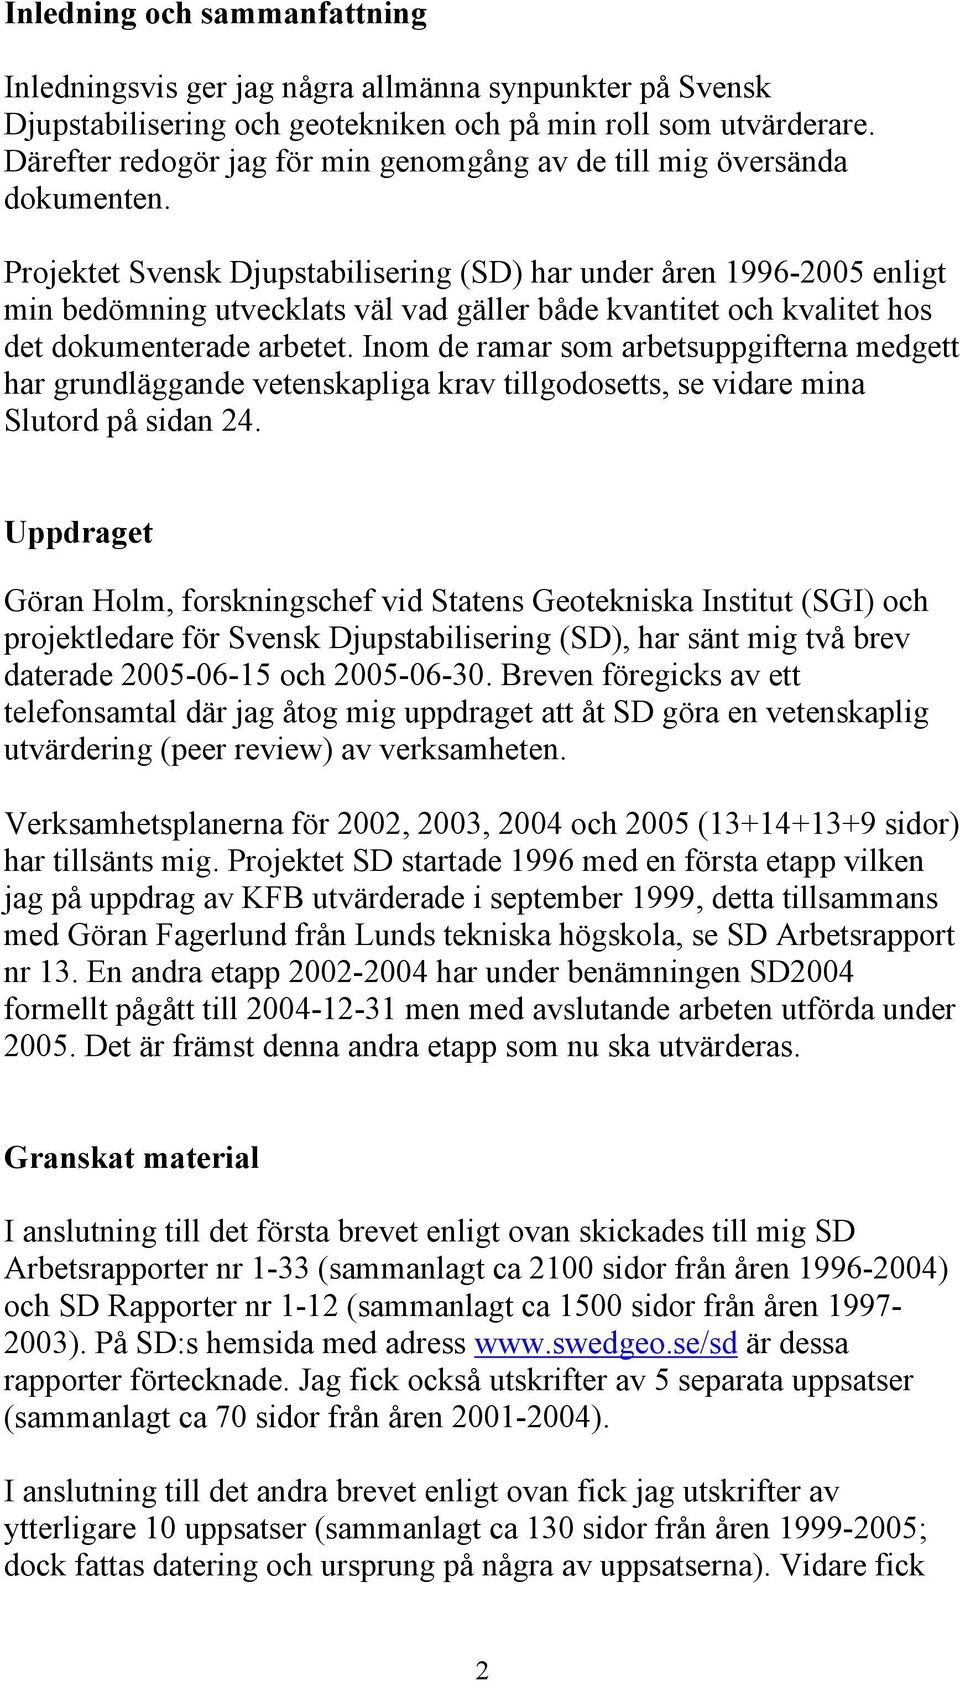 Projektet Svensk Djupstabilisering (SD) har under åren 1996-2005 enligt min bedömning utvecklats väl vad gäller både kvantitet och kvalitet hos det dokumenterade arbetet.